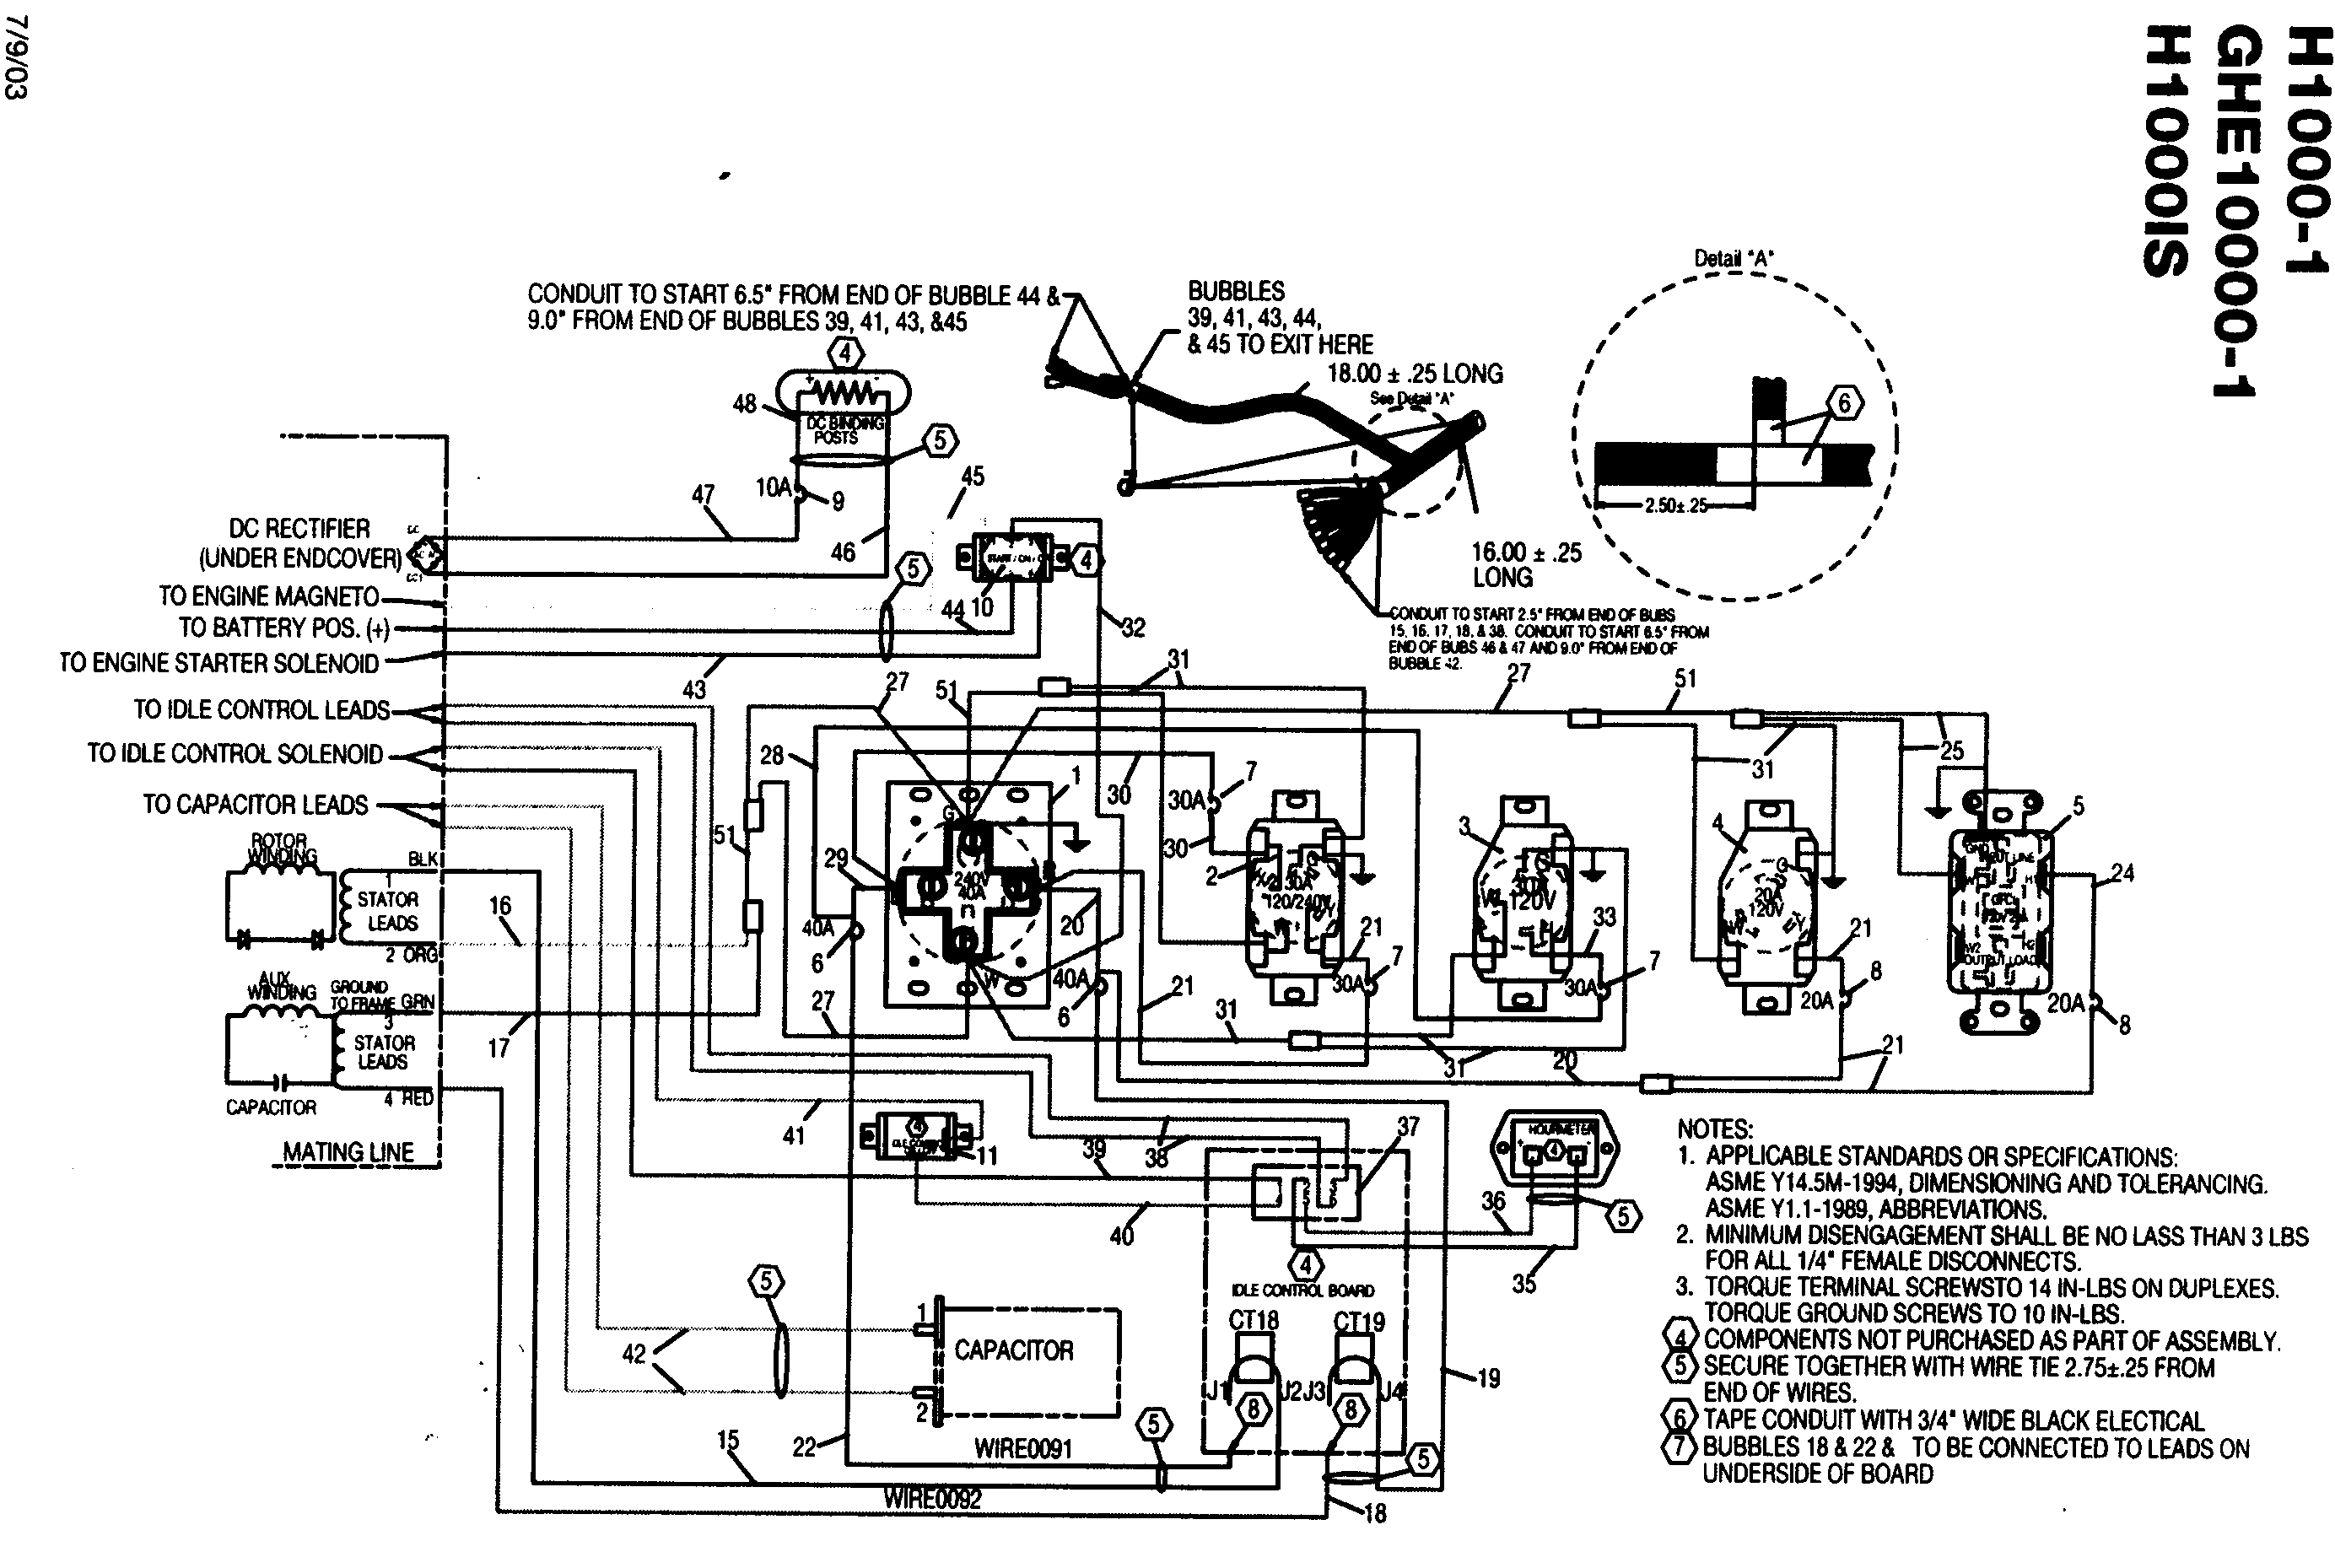 Honda generator wiring schematic #4